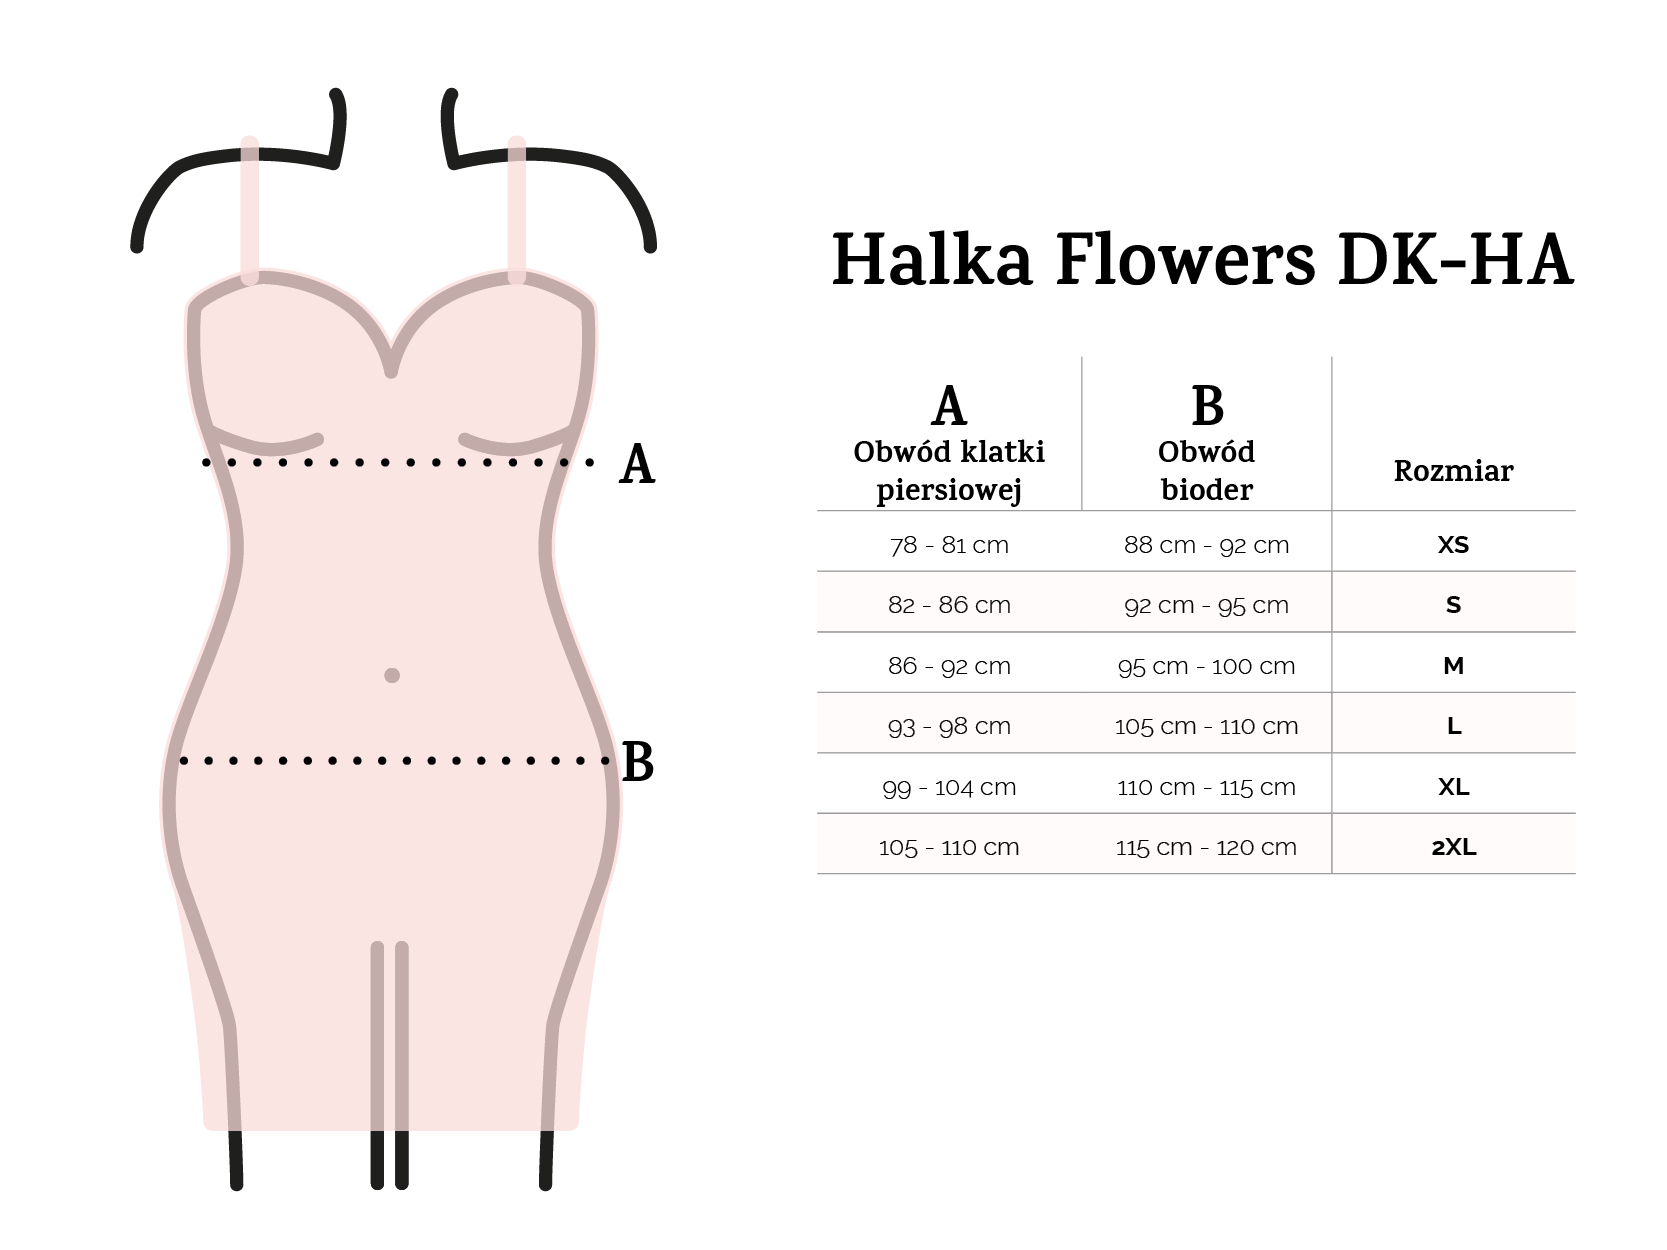 Halka Flowers DK-HA